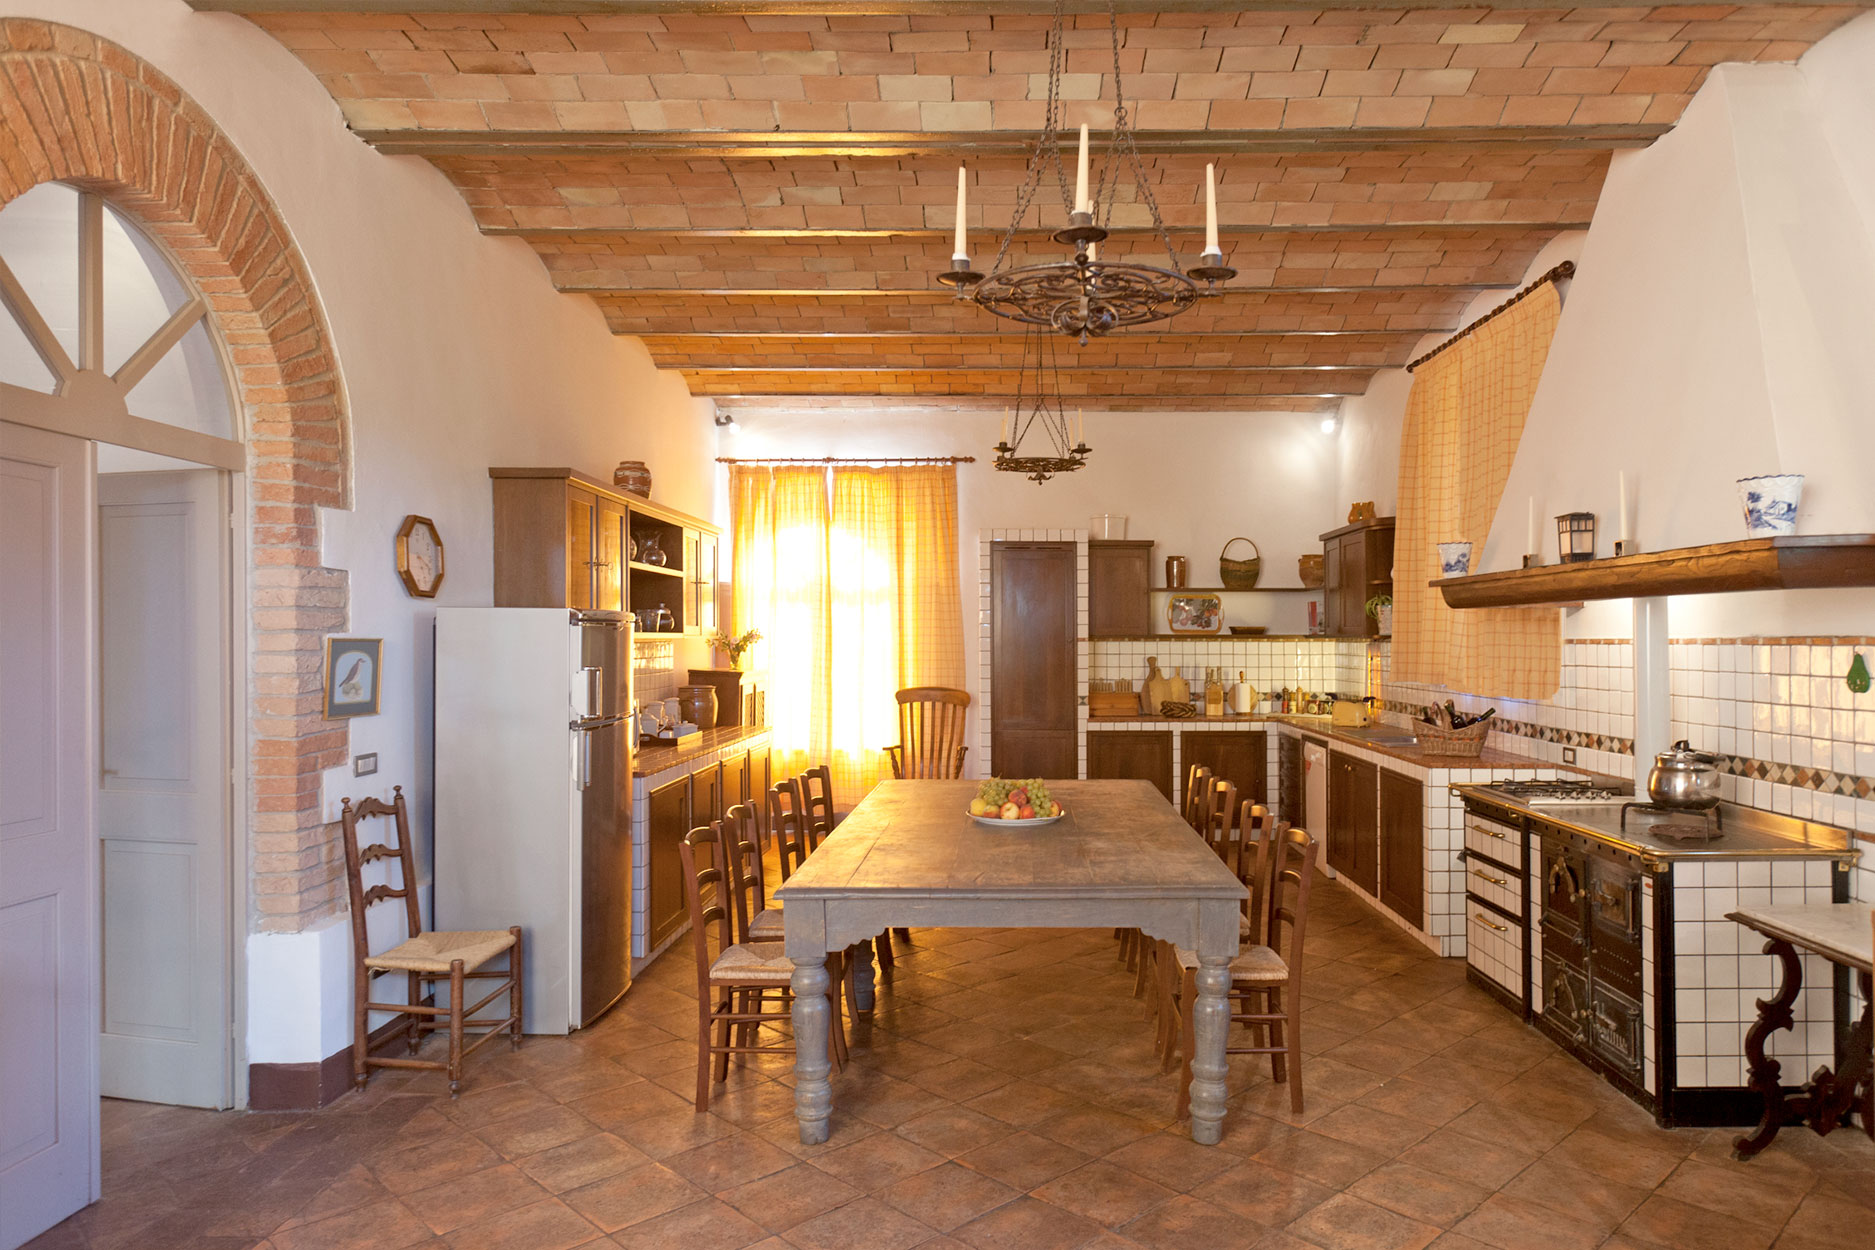 Sant-Antonio-kitchen